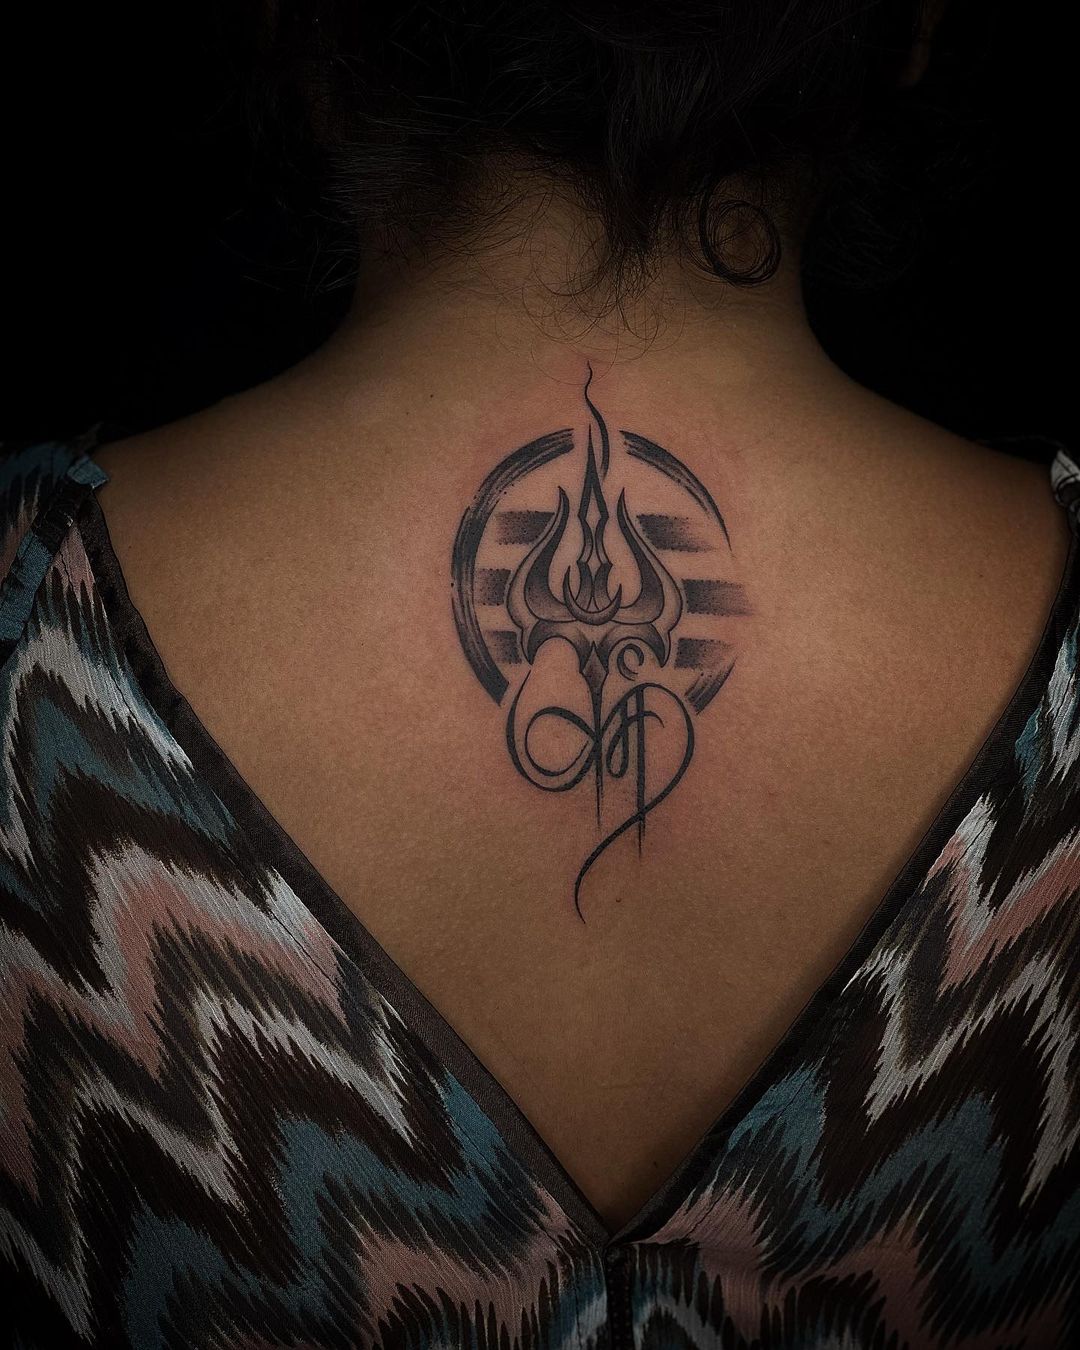 Back of Neck  Karma tattoo Tattoos Ink tattoo